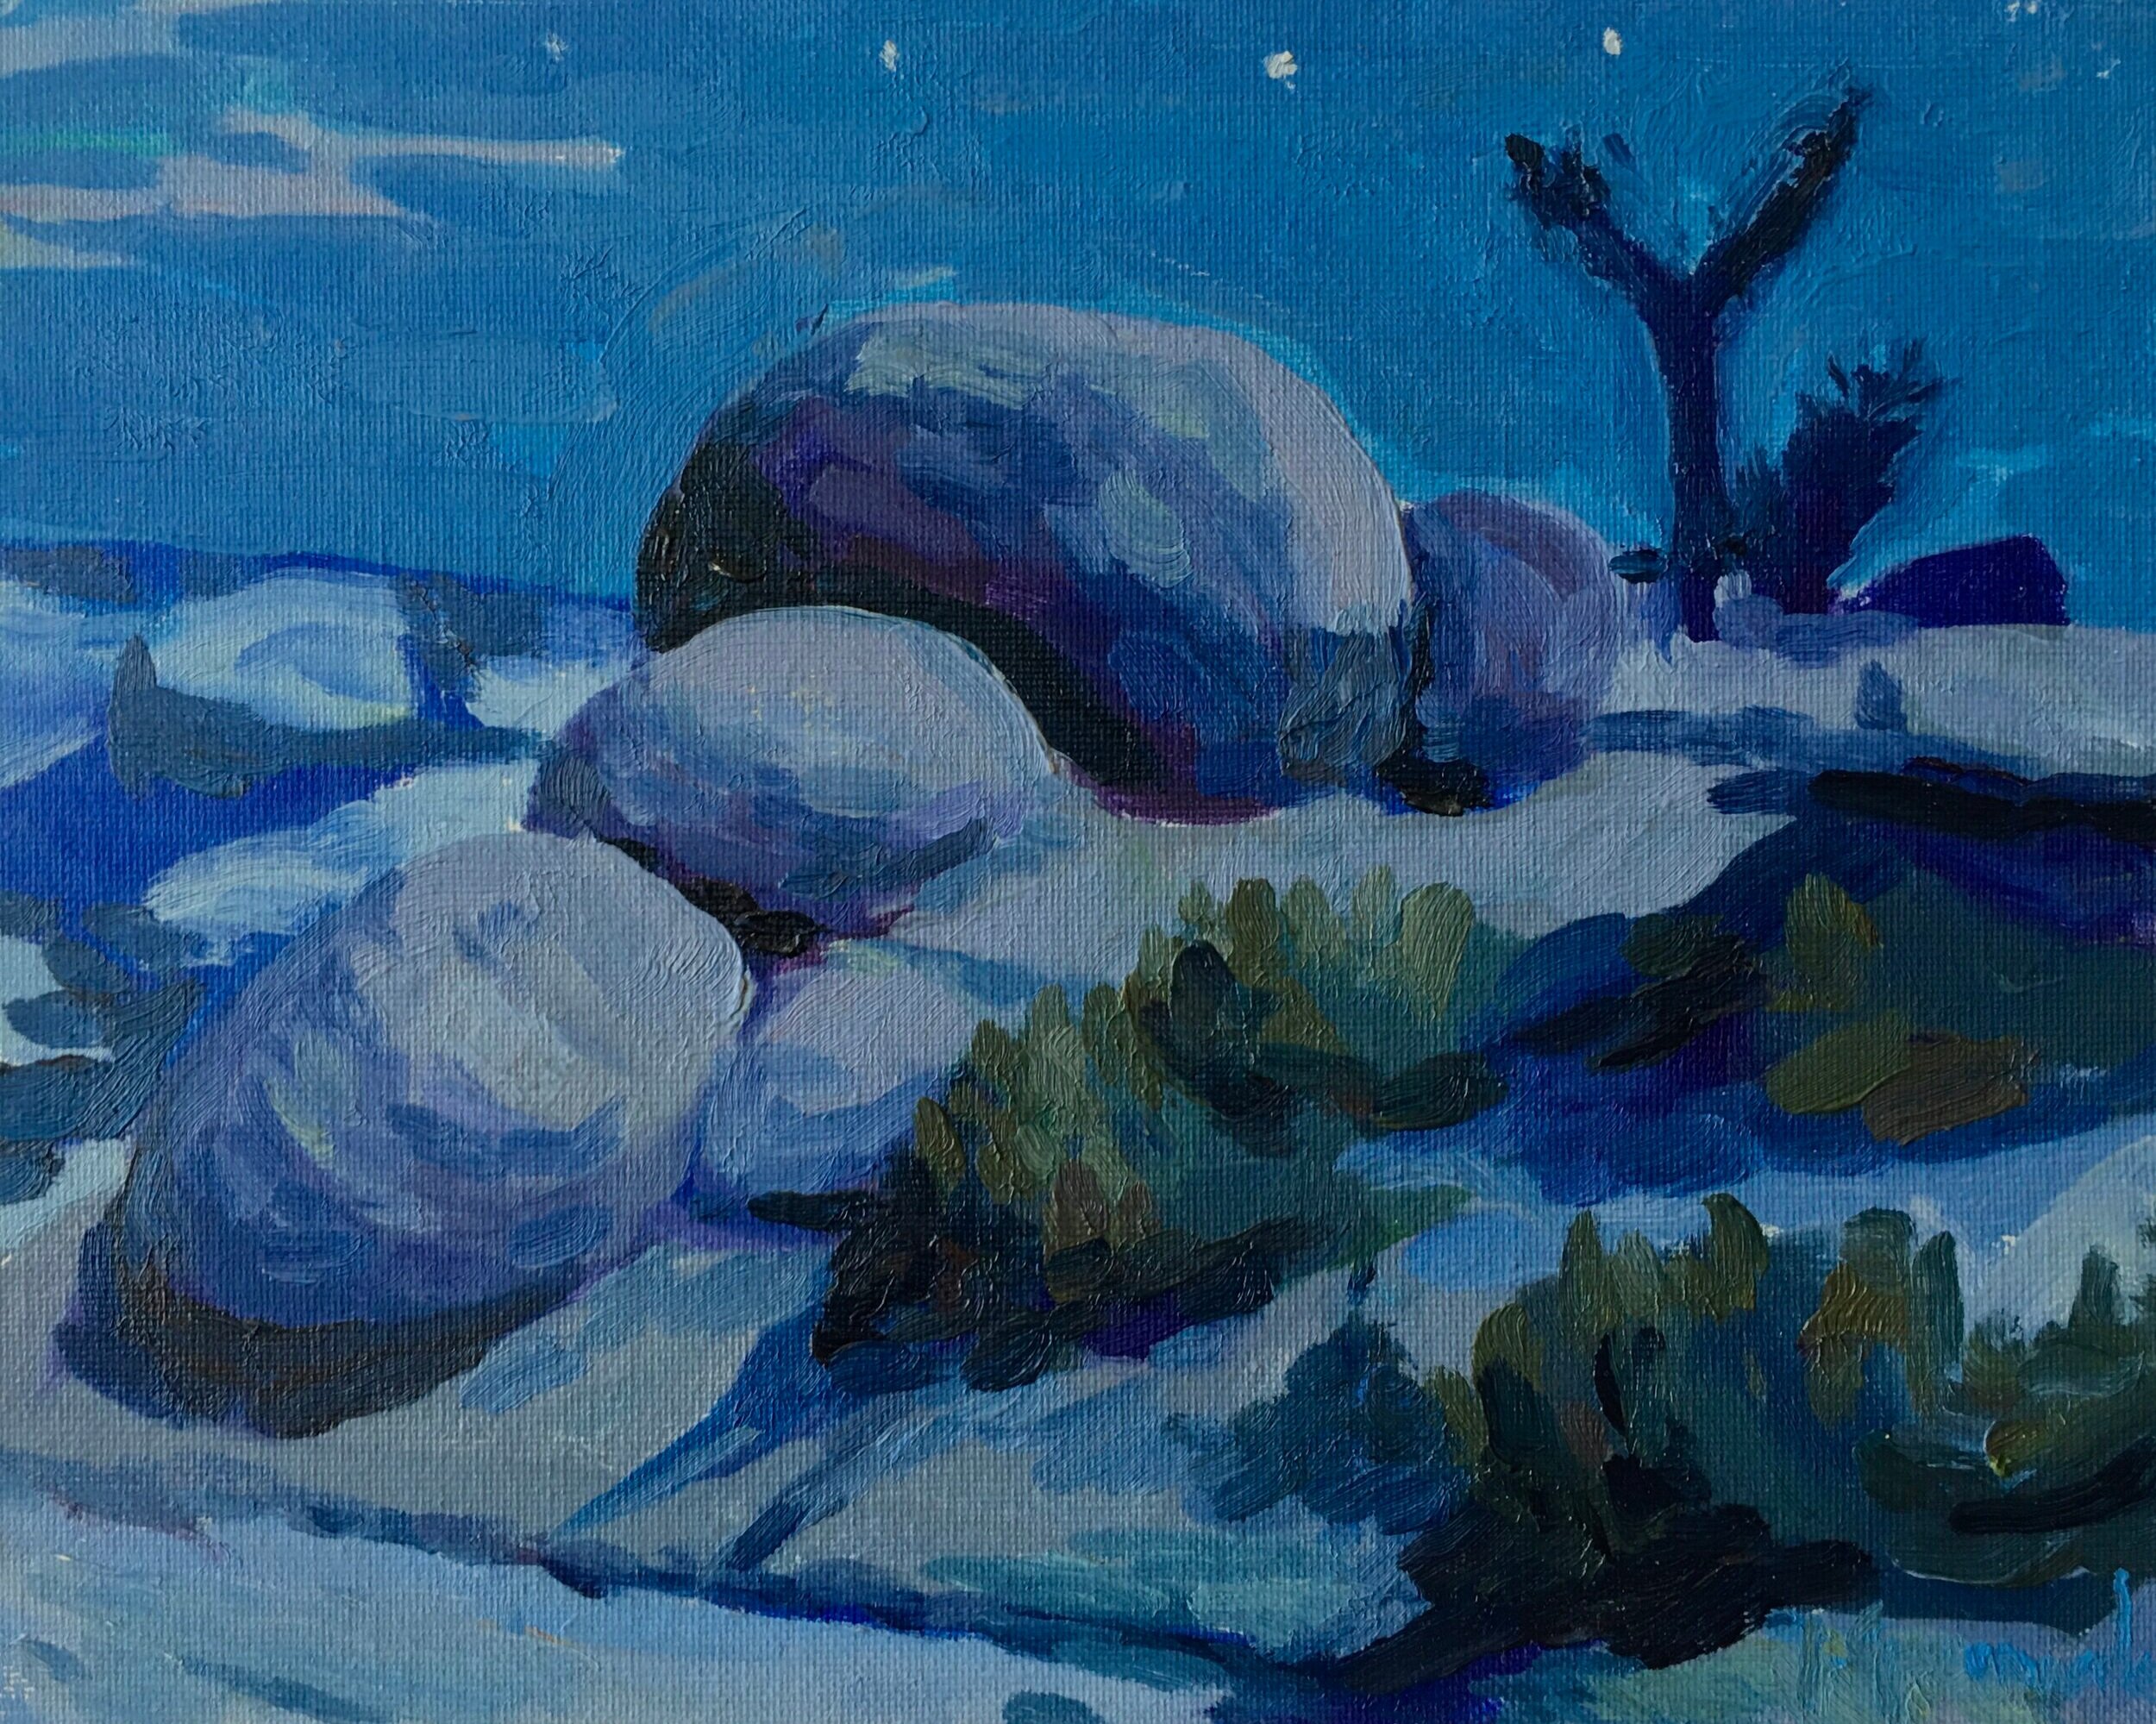 Midnight in Jumbo Rocks